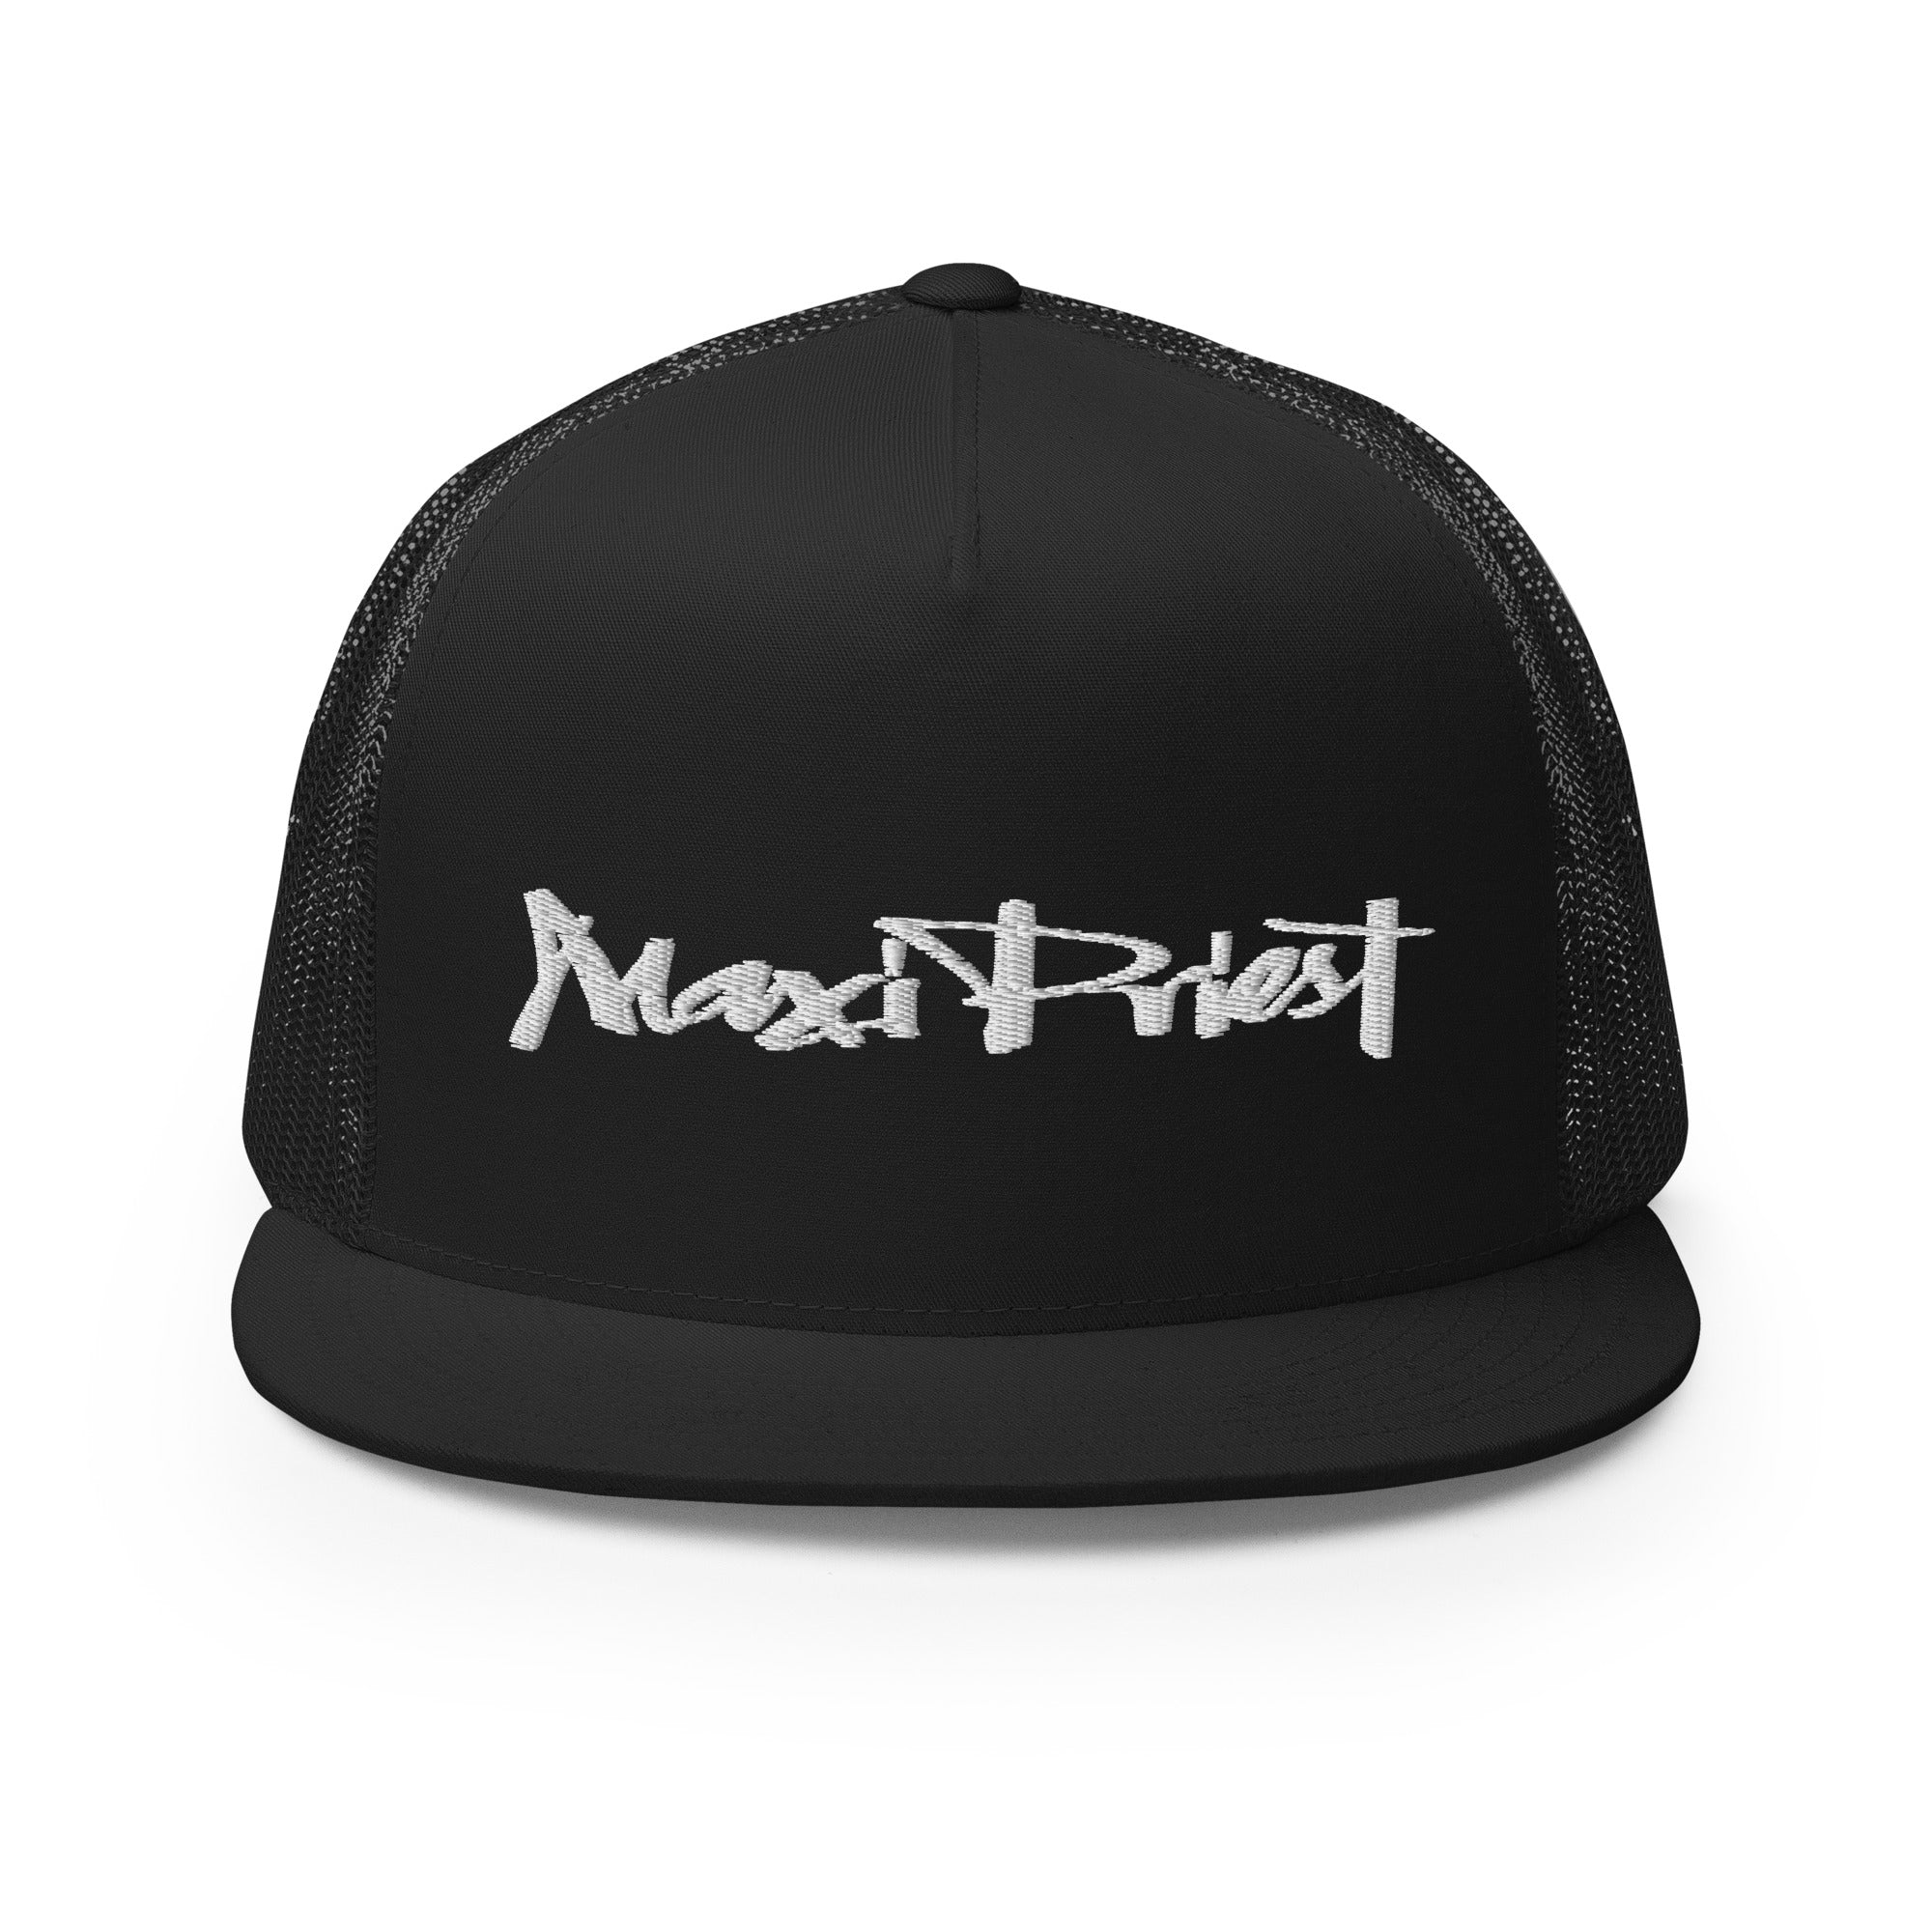 Maxi Priest - Trucker Cap